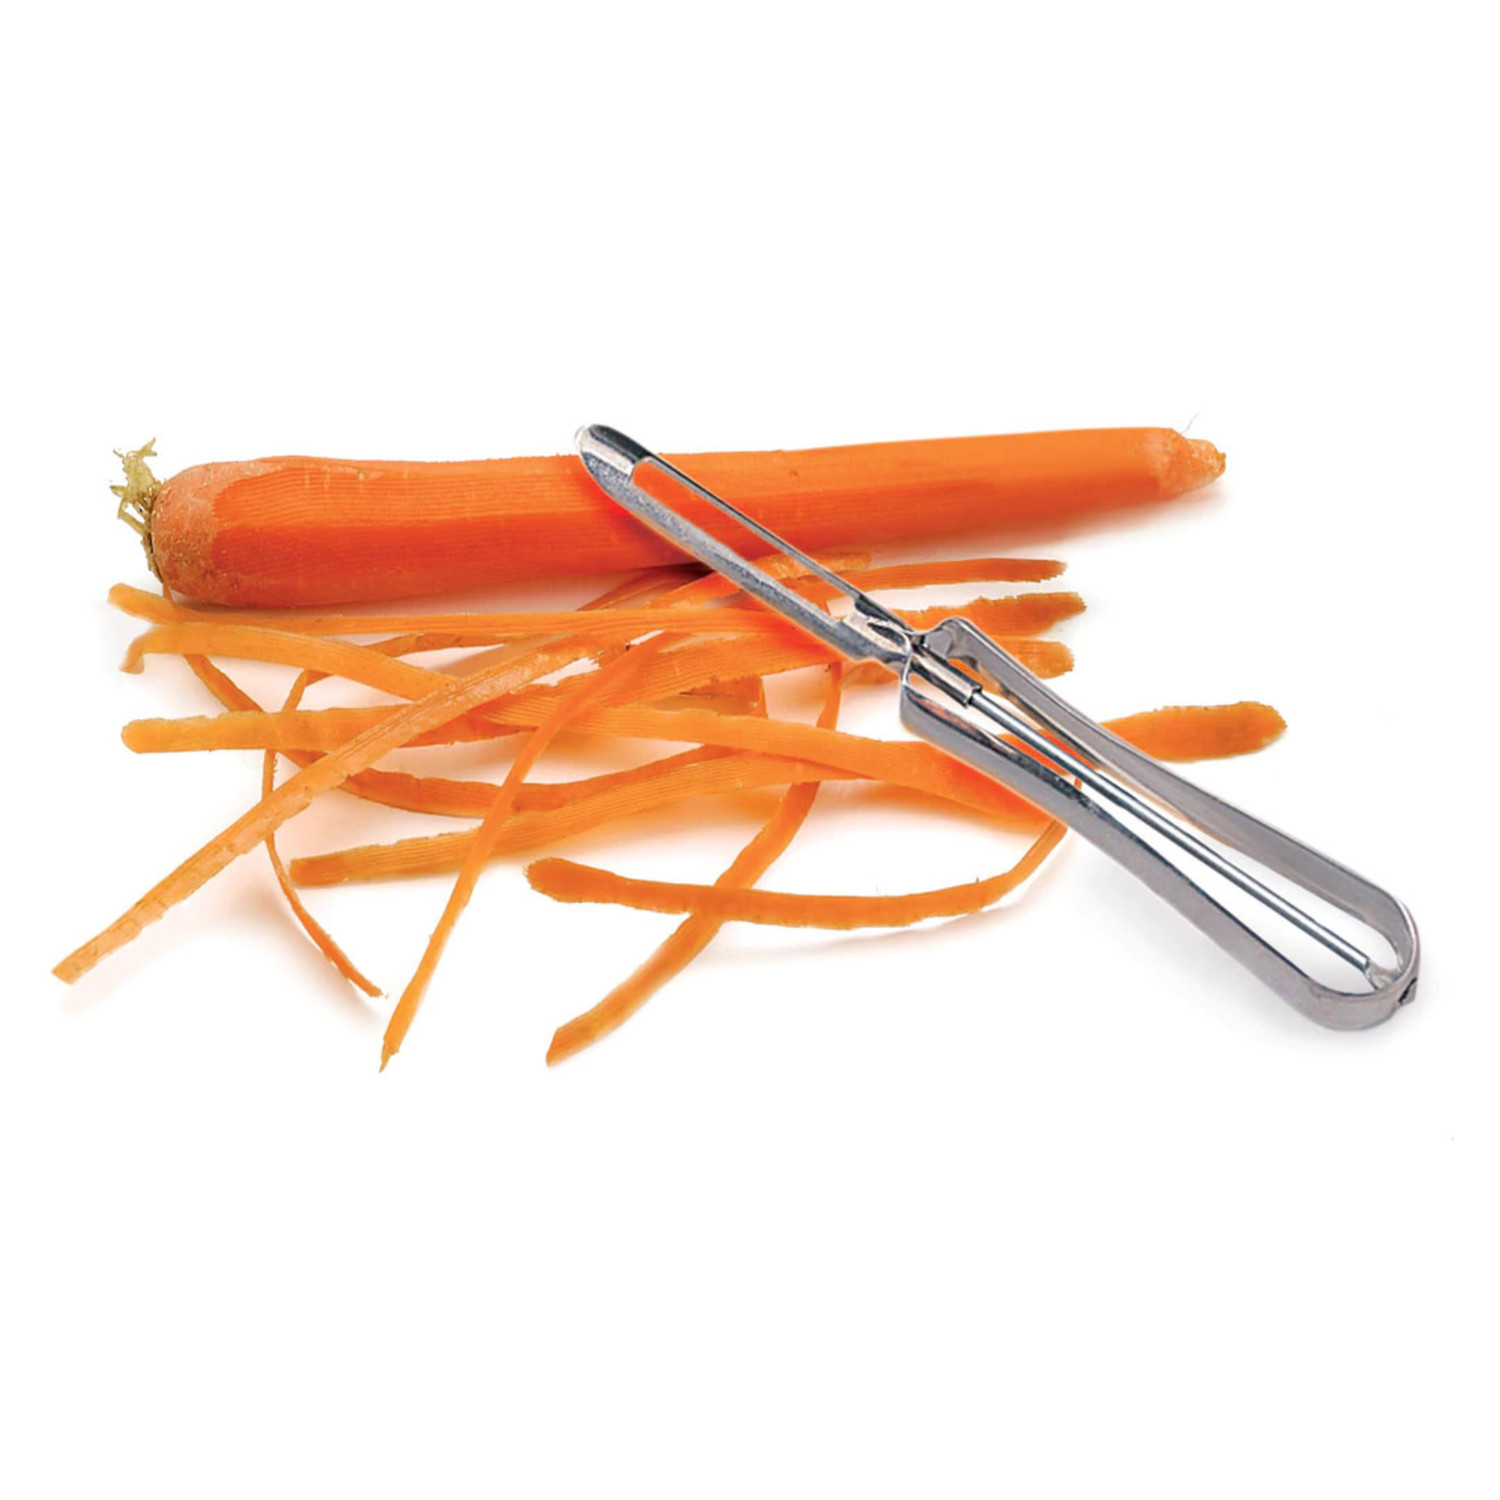 Stainless Steel Peeler - Set of 3 - Swivel Peeling Tool for Fruit and  Vegetable - Potato, Carrot & Celery Skin Peelers : : Home